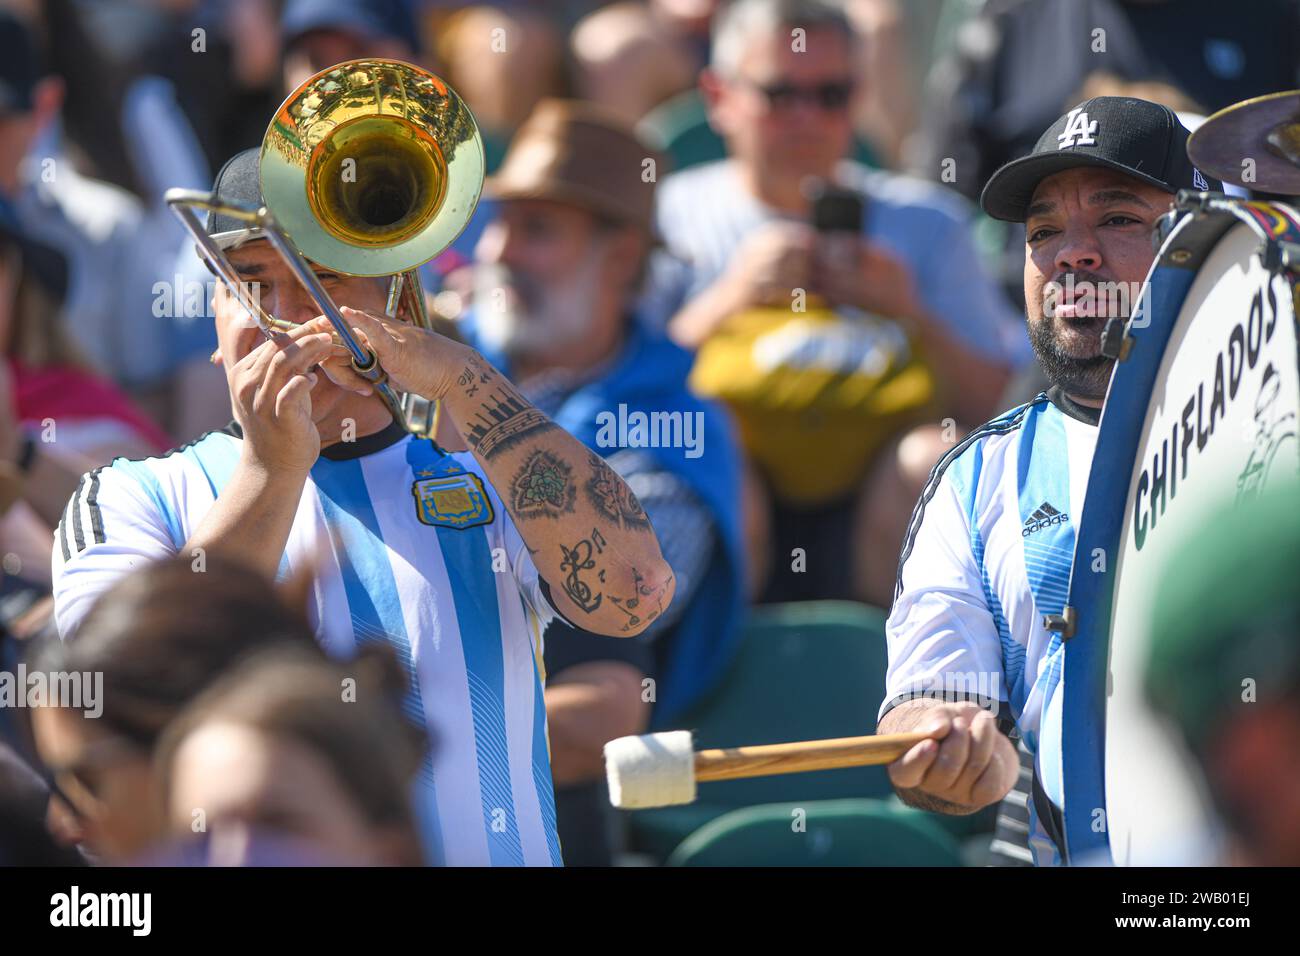 Gli appassionati di sport argentini suonano musica con batteria e trombone Foto Stock